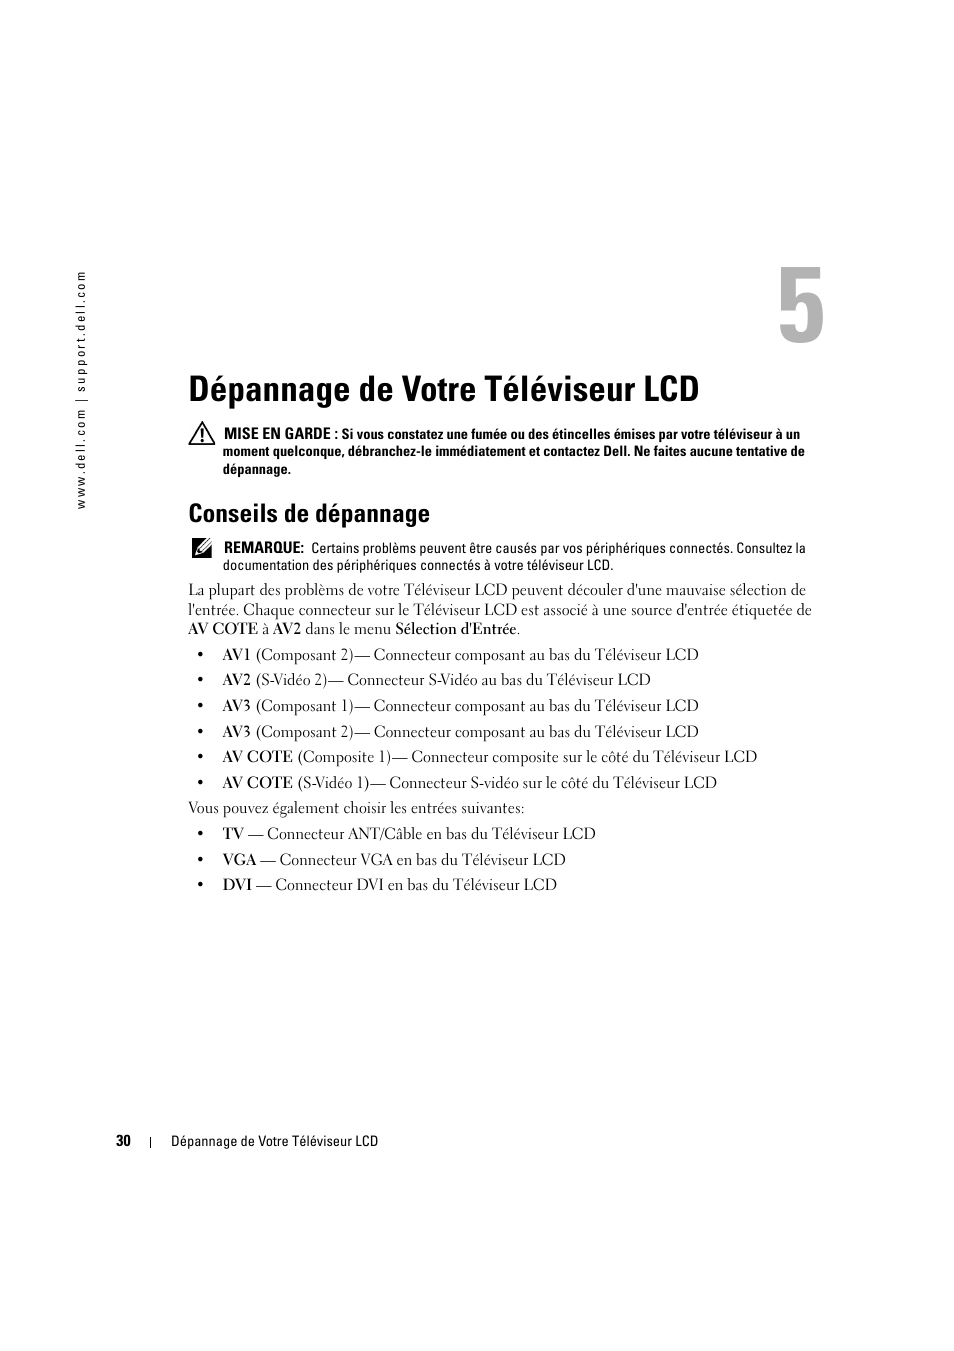 Dépannage de votre téléviseur lcd, Conseils de dépannage | Dell LCD TV W2606C Manuel d'utilisation | Page 30 / 60